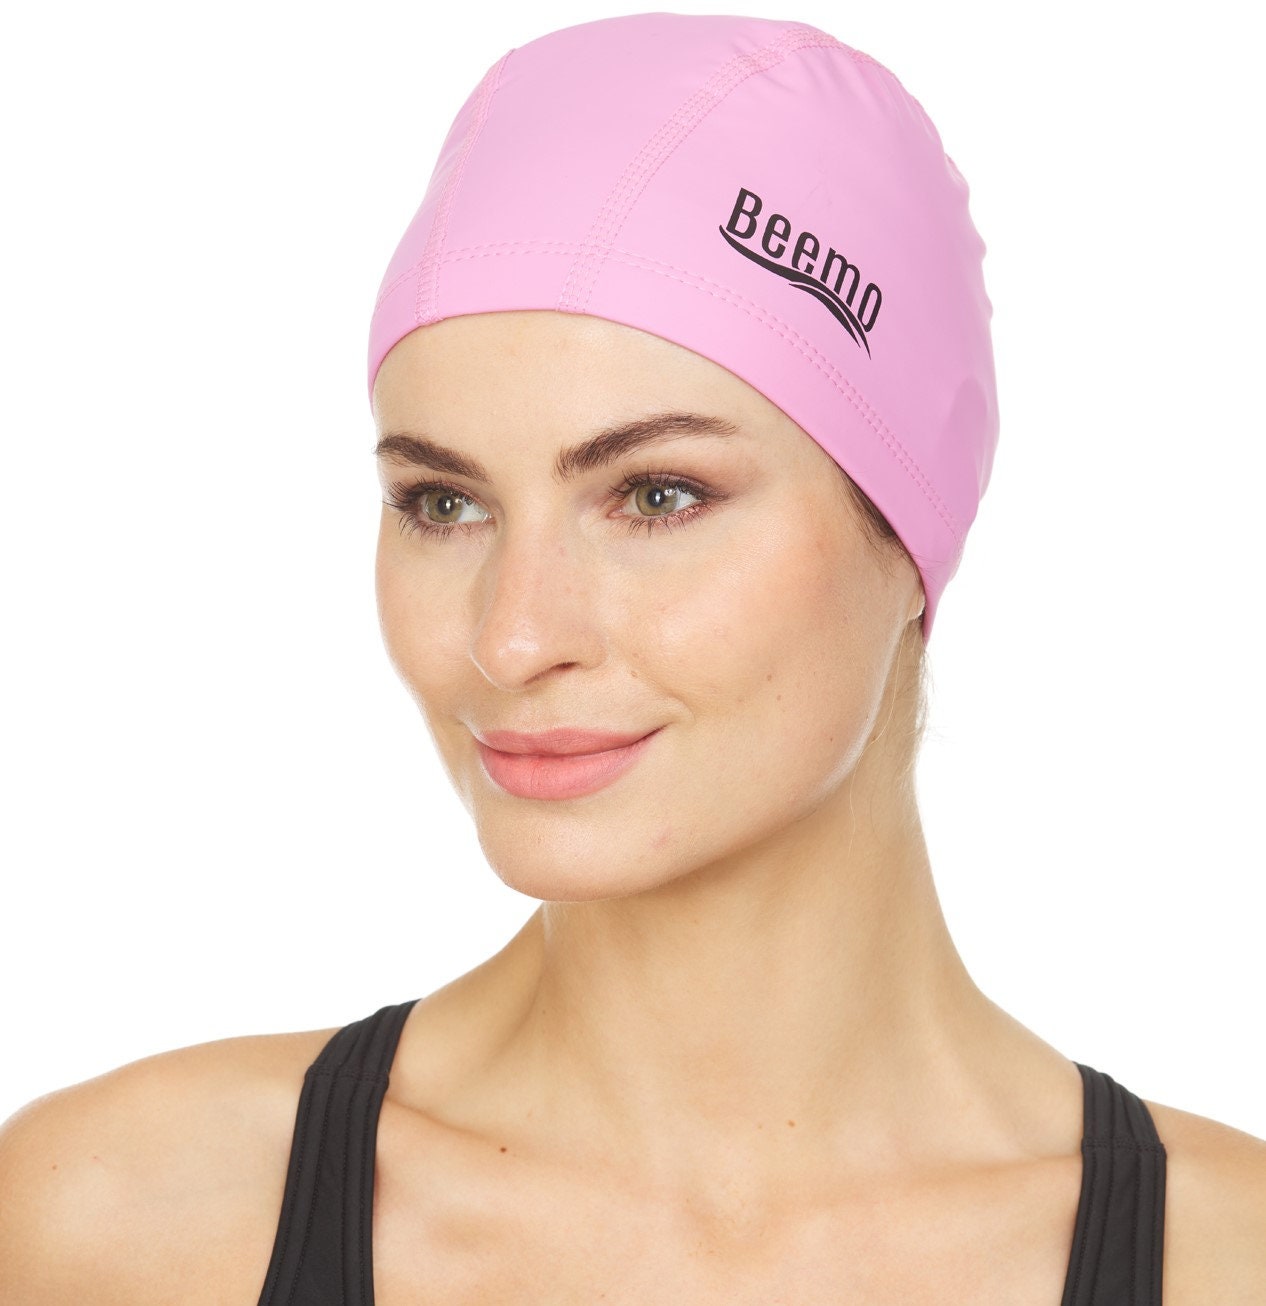 Elastic Fabric Protect Ears Long Hair Swim Pool Hat Swimming Cap For children#6 